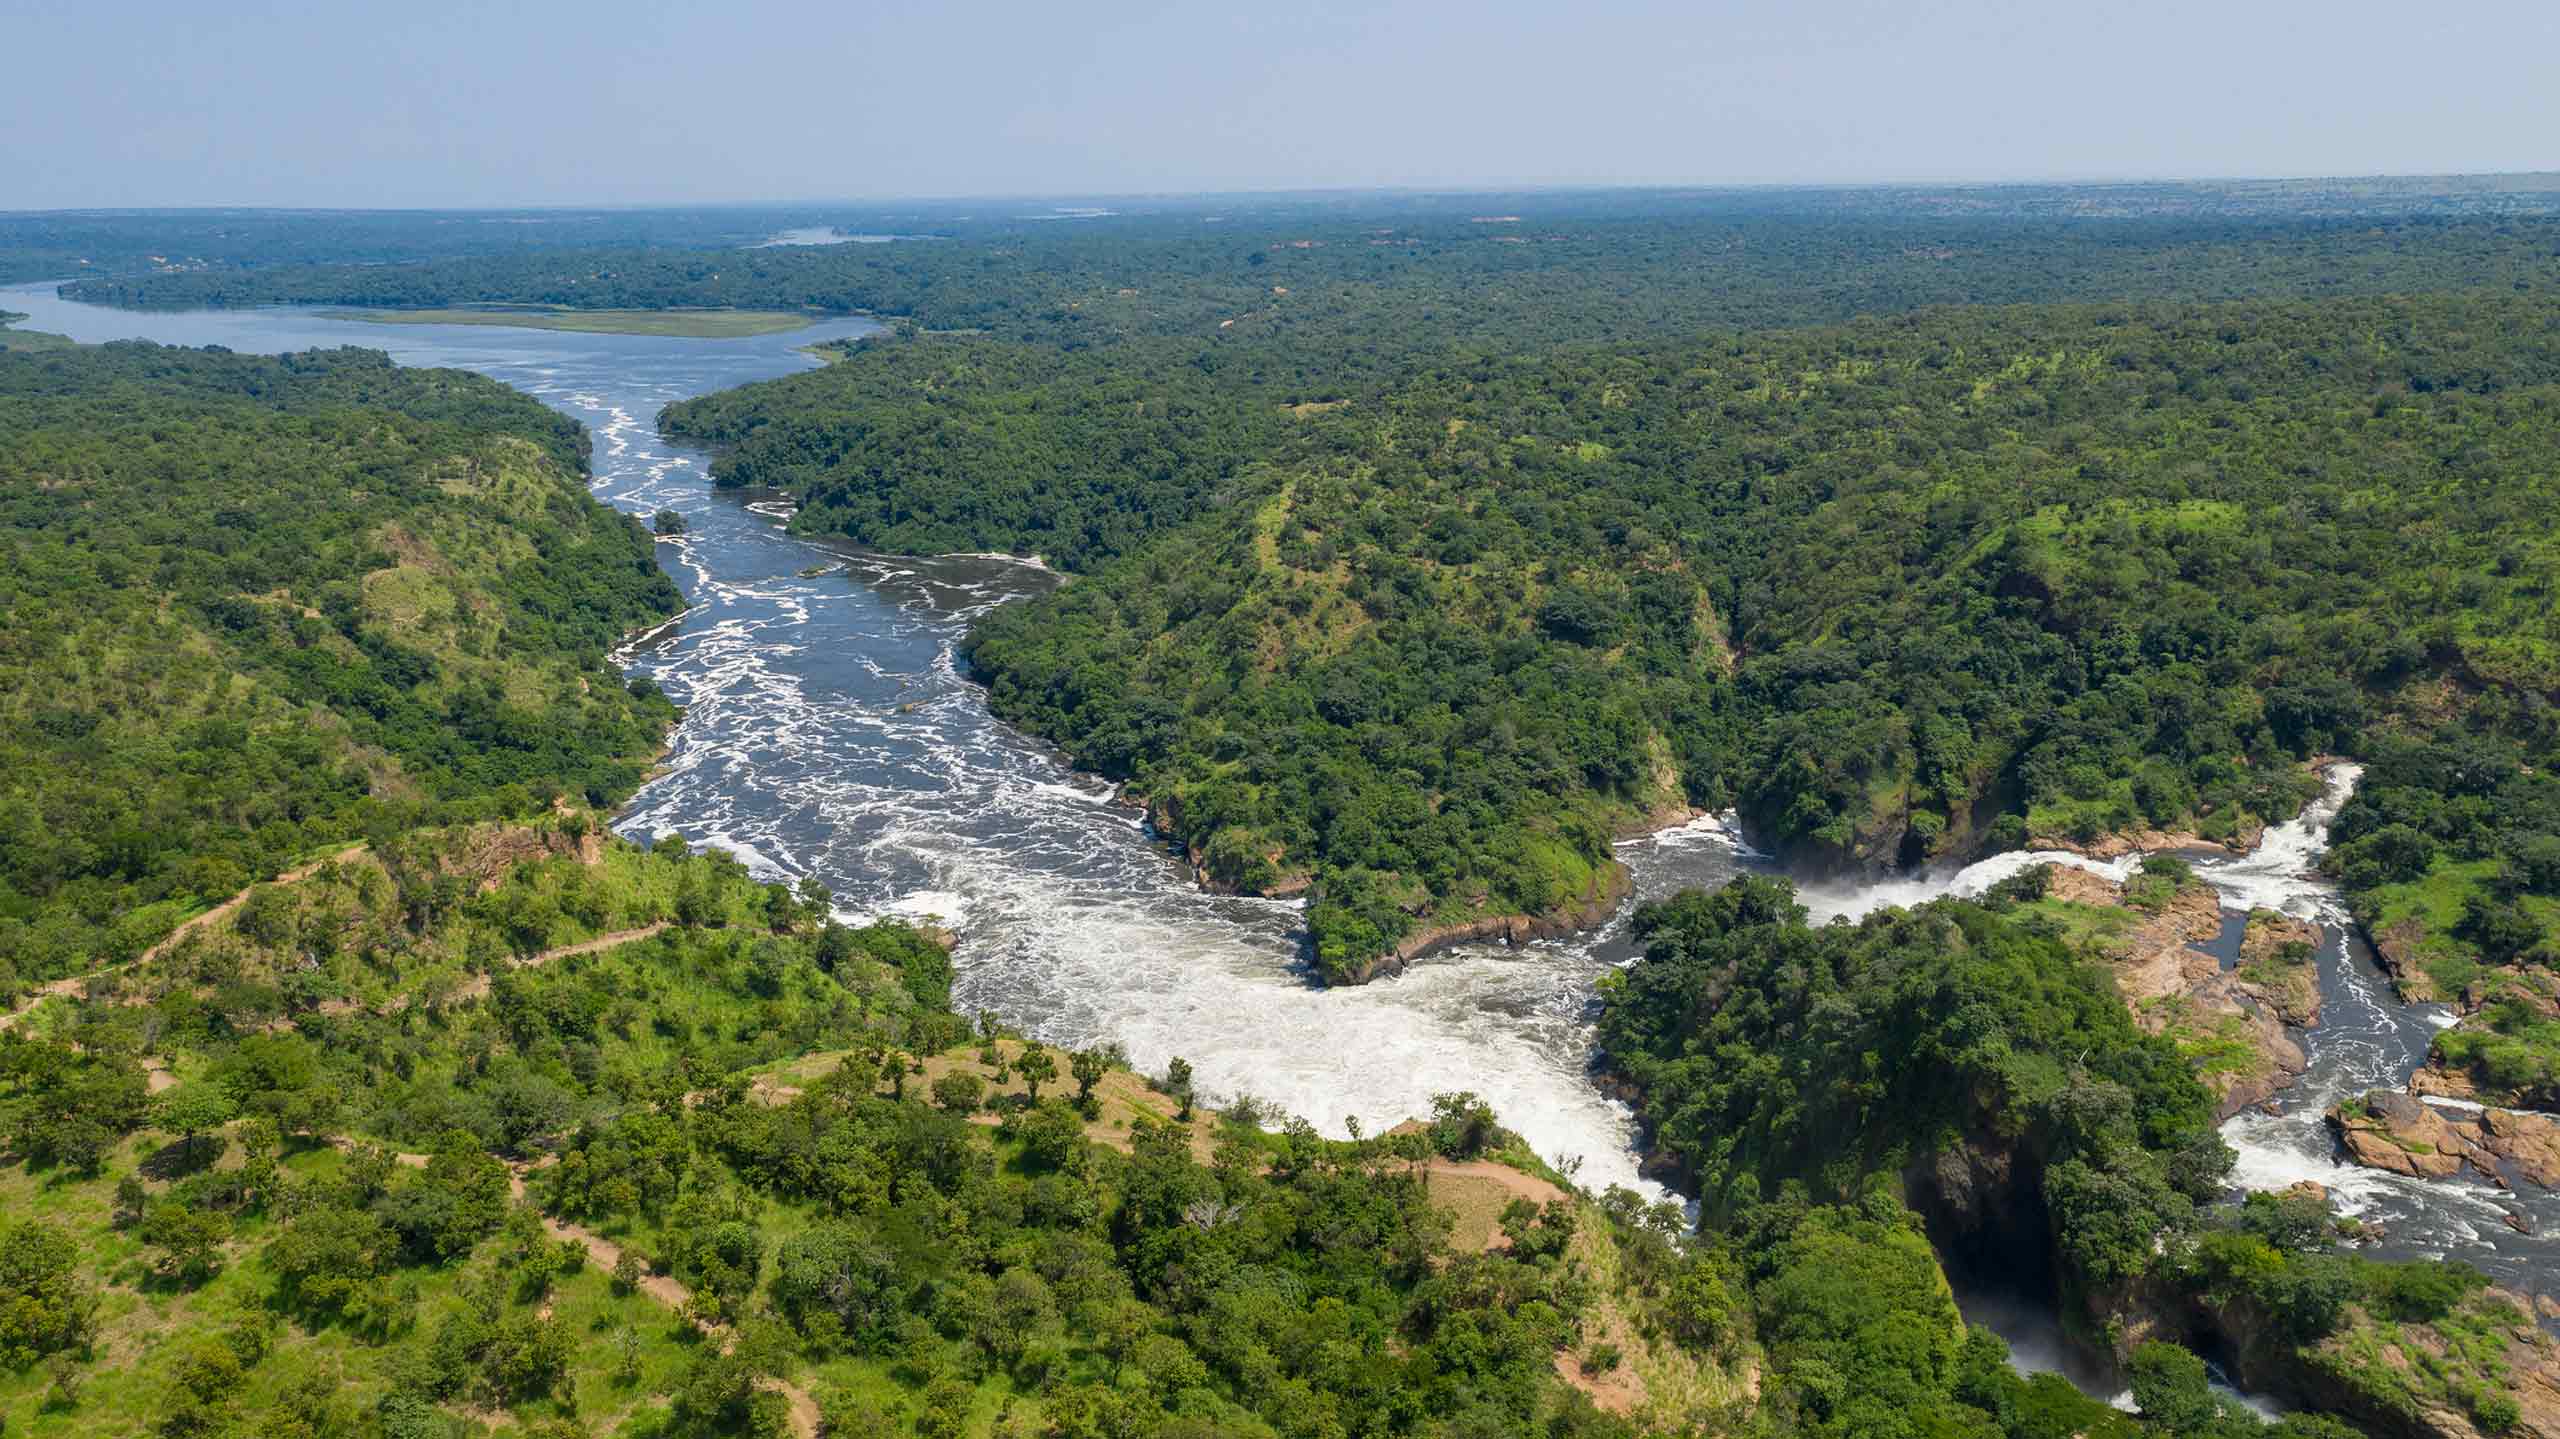 Aerial view of Murchison Falls in Uganda